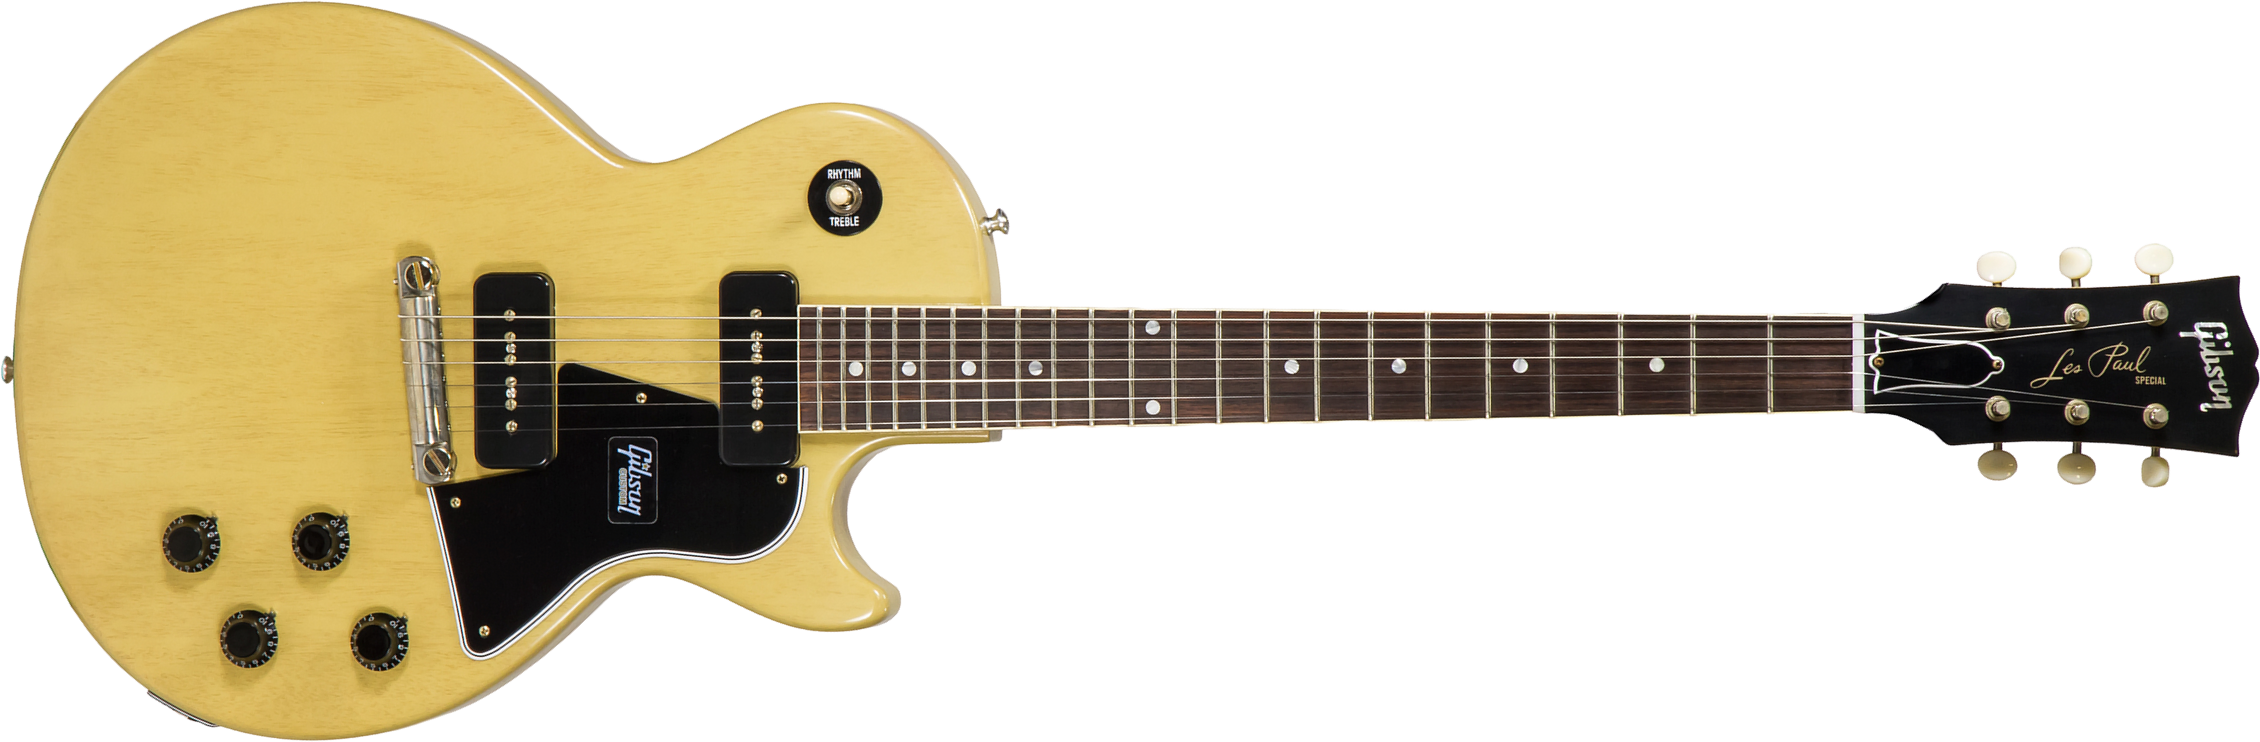 Gibson Custom Shop Les Paul Special 1957 Single Cut Reissue 2p90 Ht Rw - Vos Tv Yellow - Guitare Électrique Single Cut - Main picture